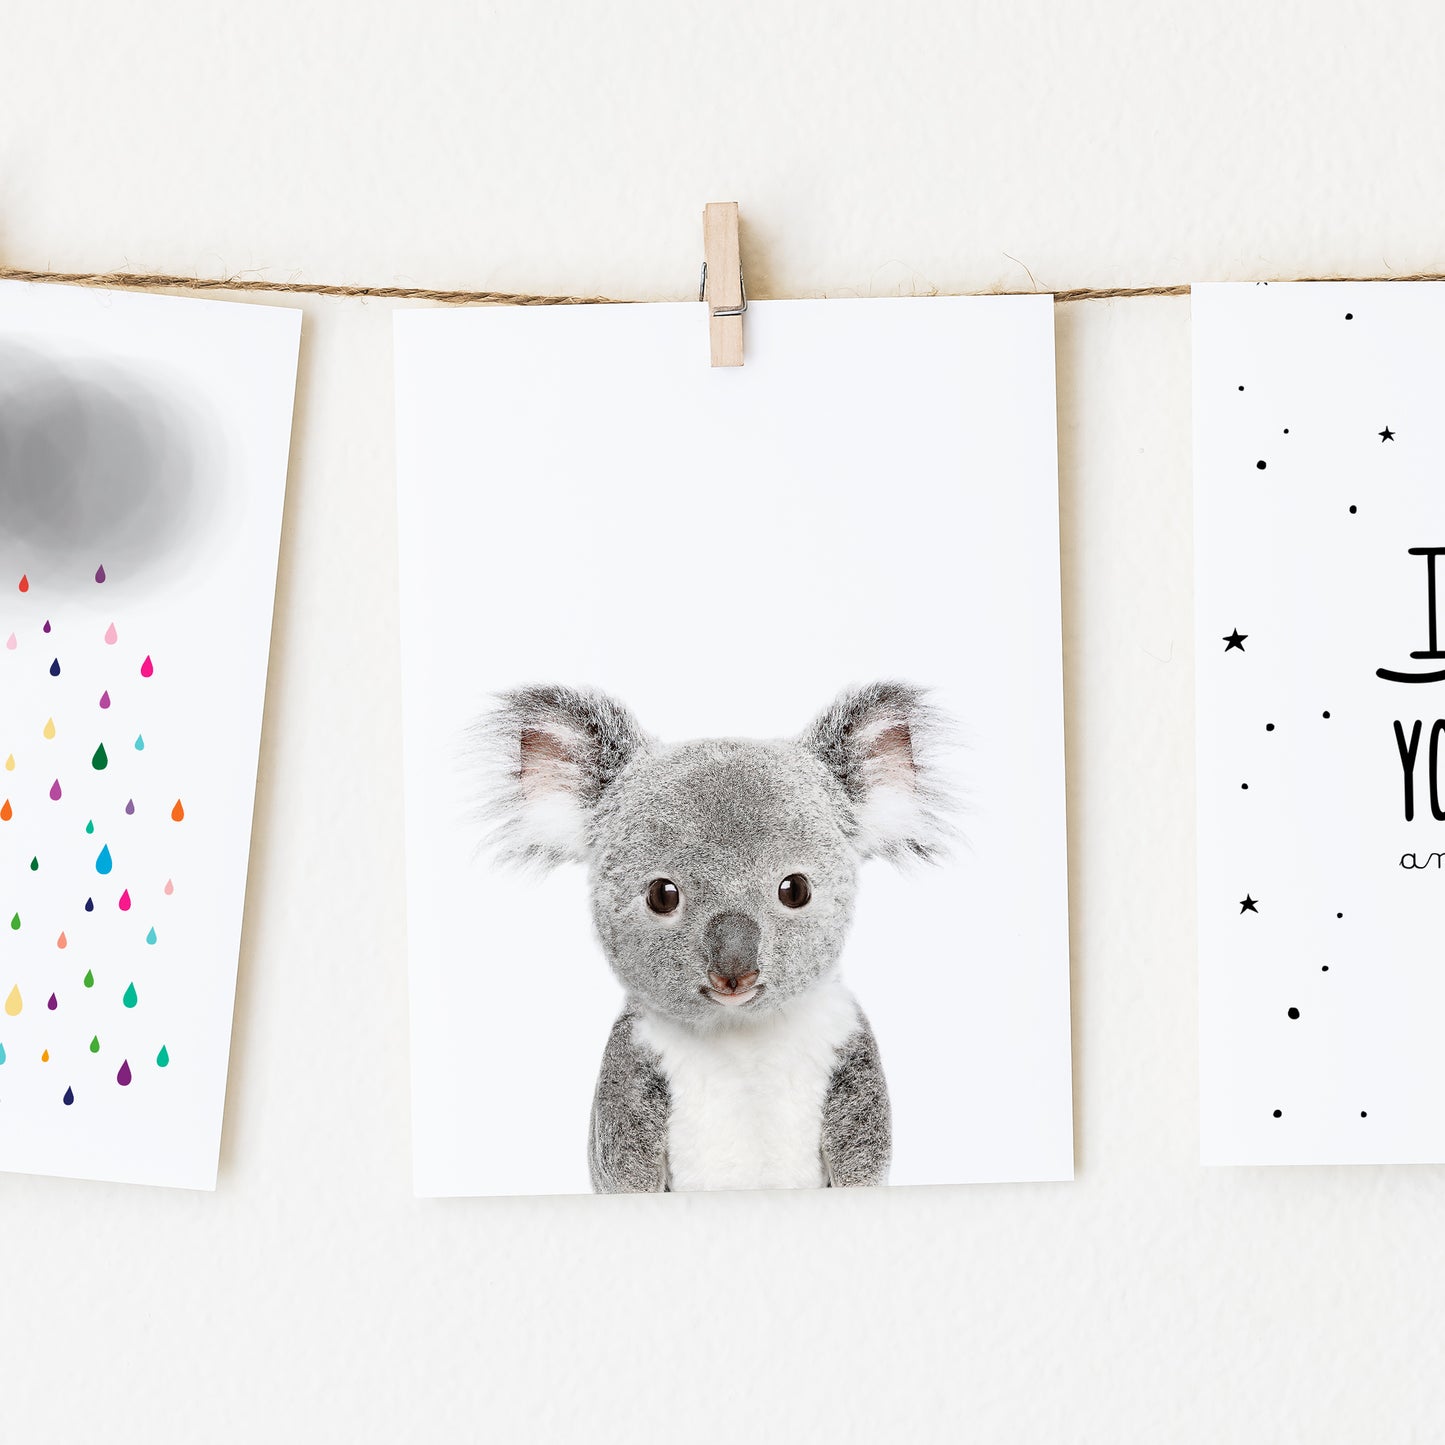 Baby Koala Wall Art Print